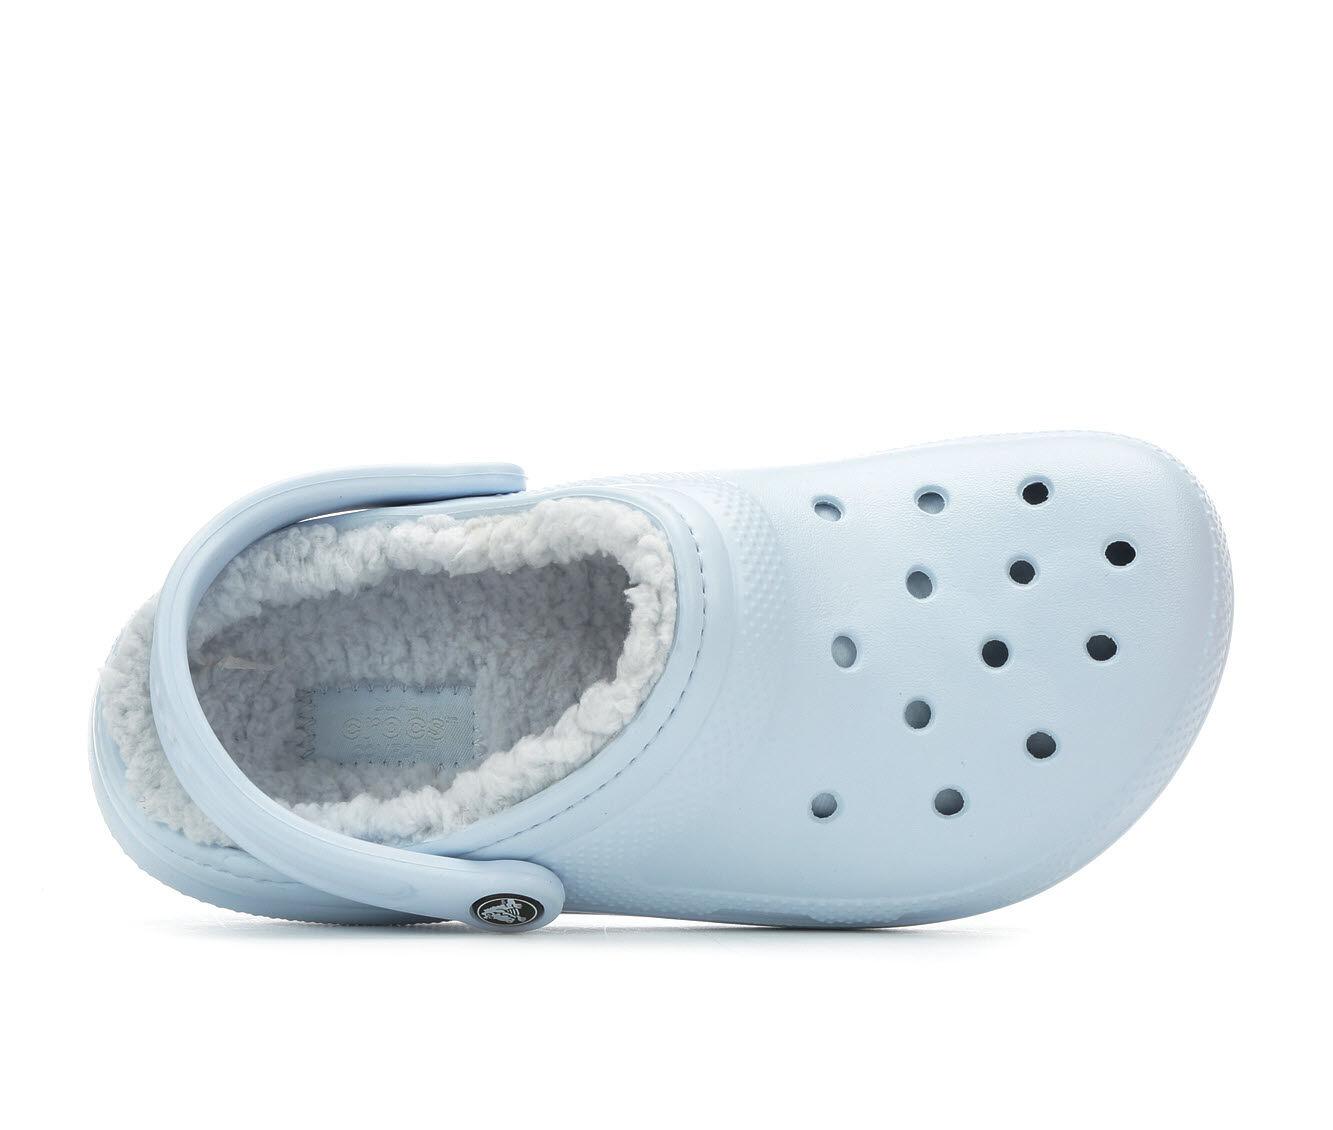 fuzzy crocs shoe carnival